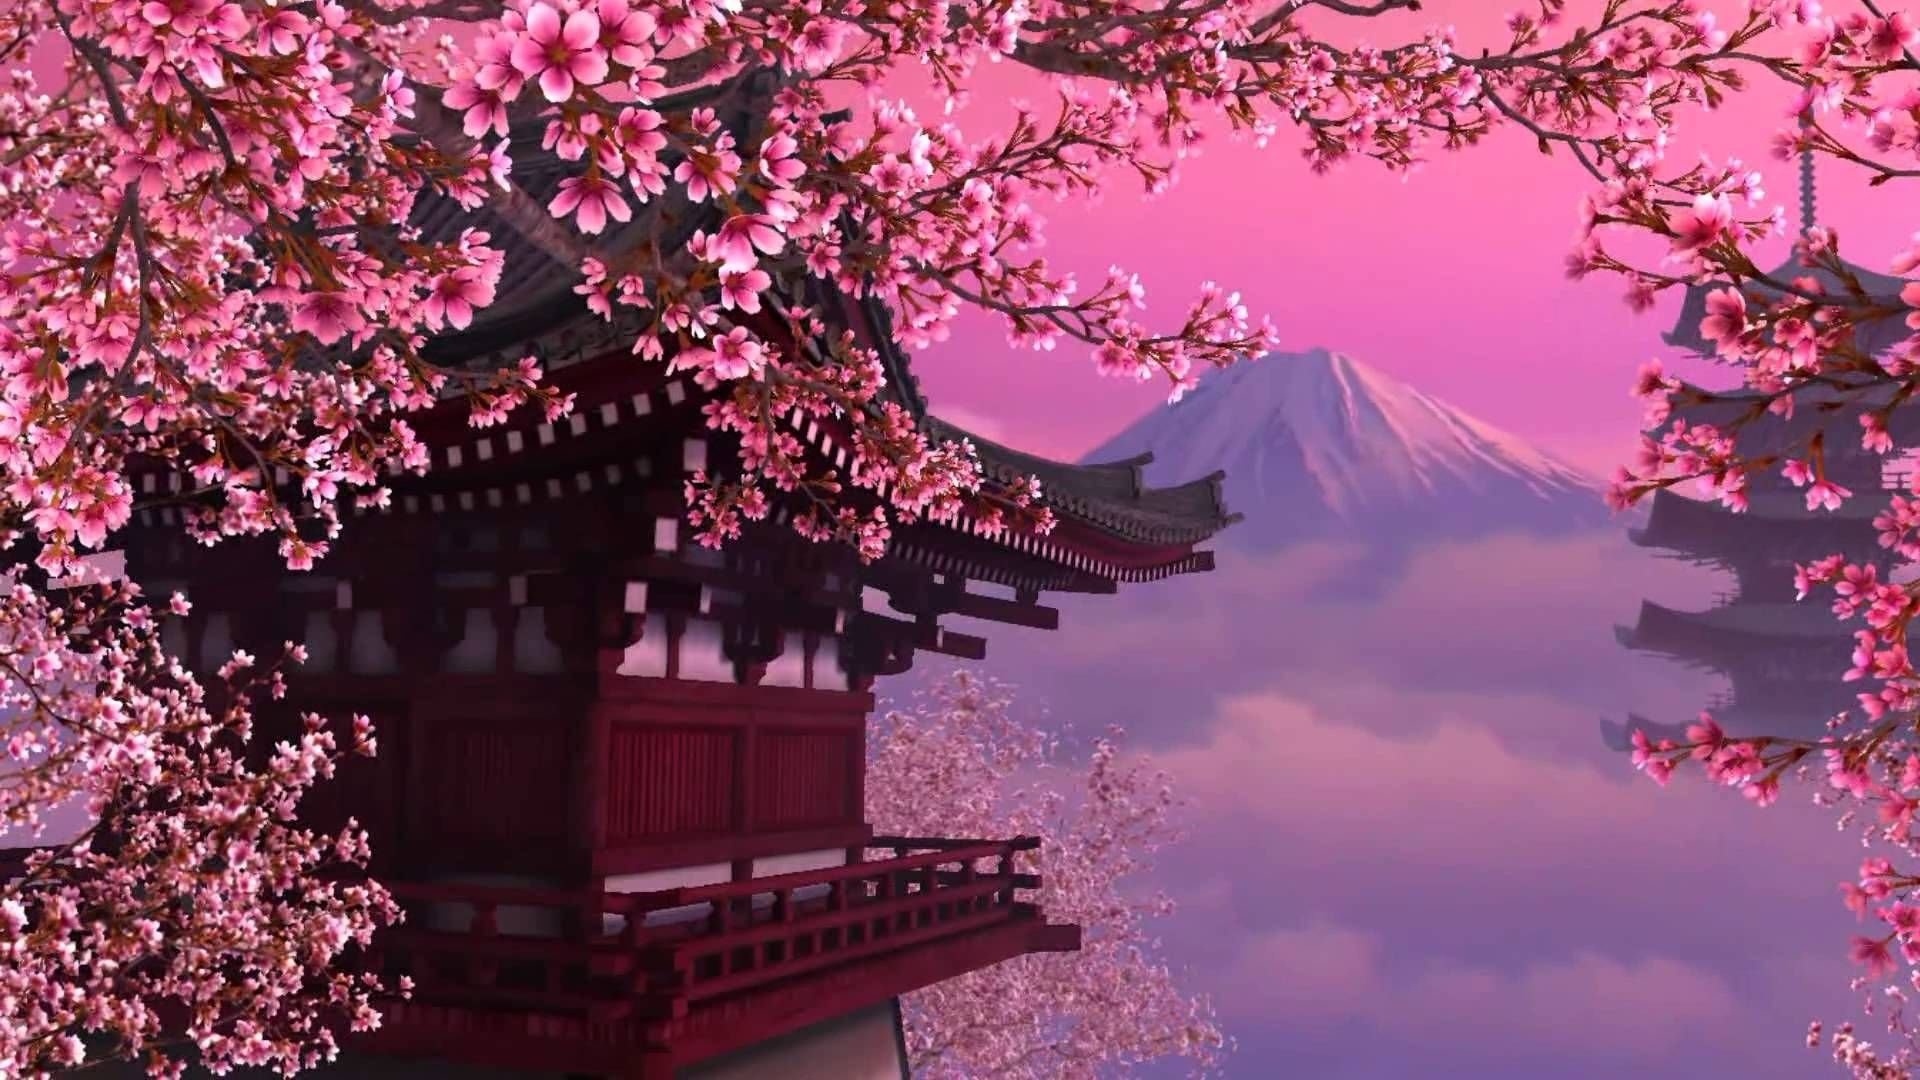 Sakura Blossom wallpaper for pc